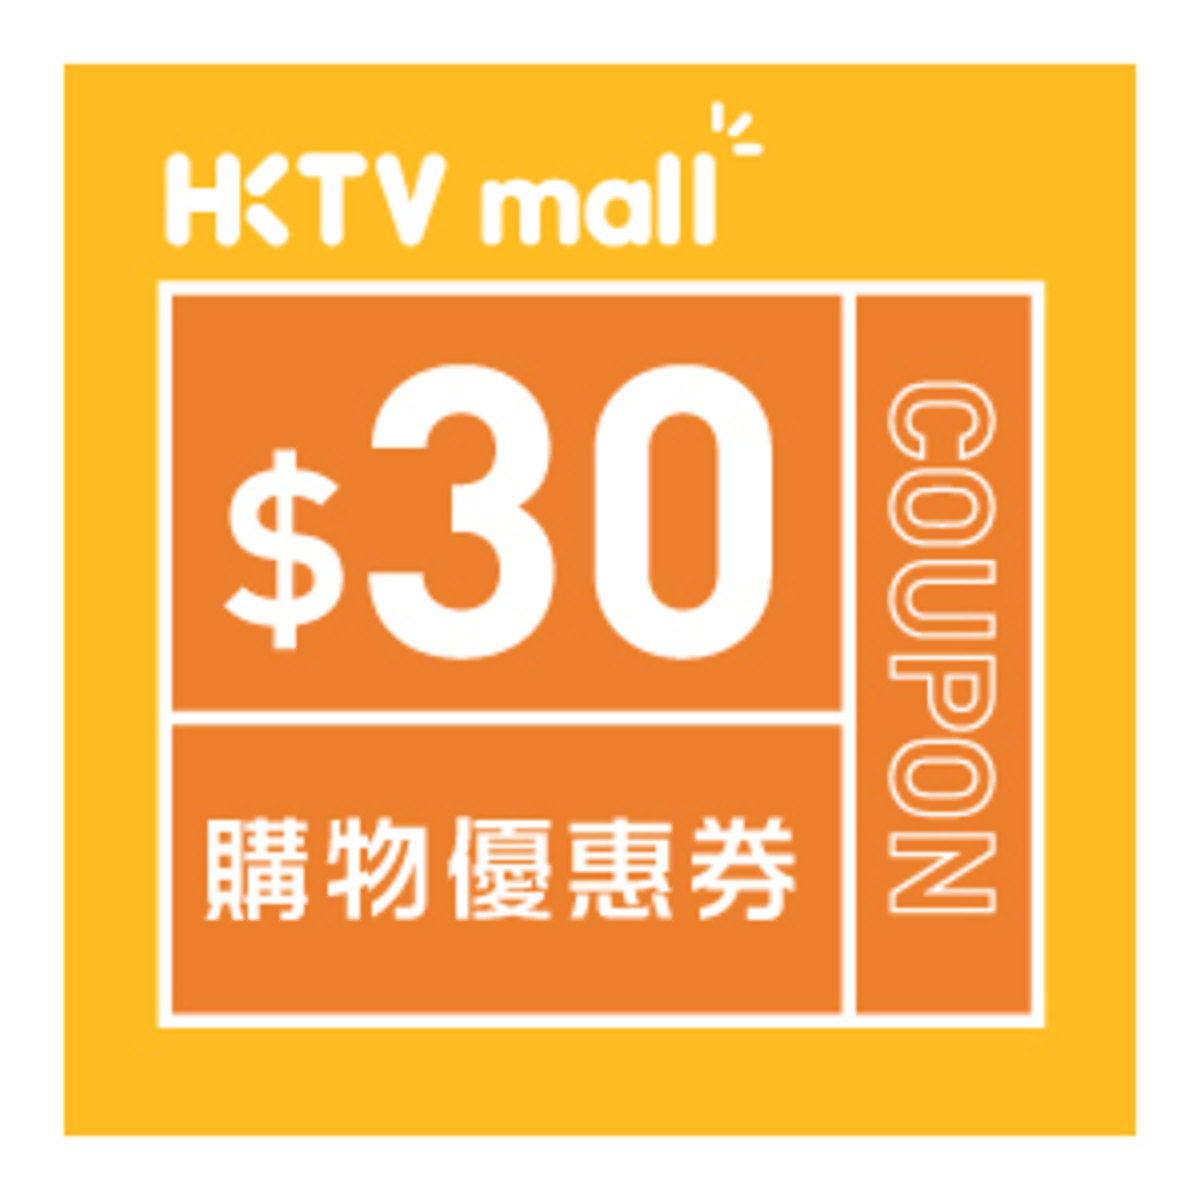 HKTVmall $30購物優惠碼 [有效日期： 2020.06.05 - 2020.07.18]